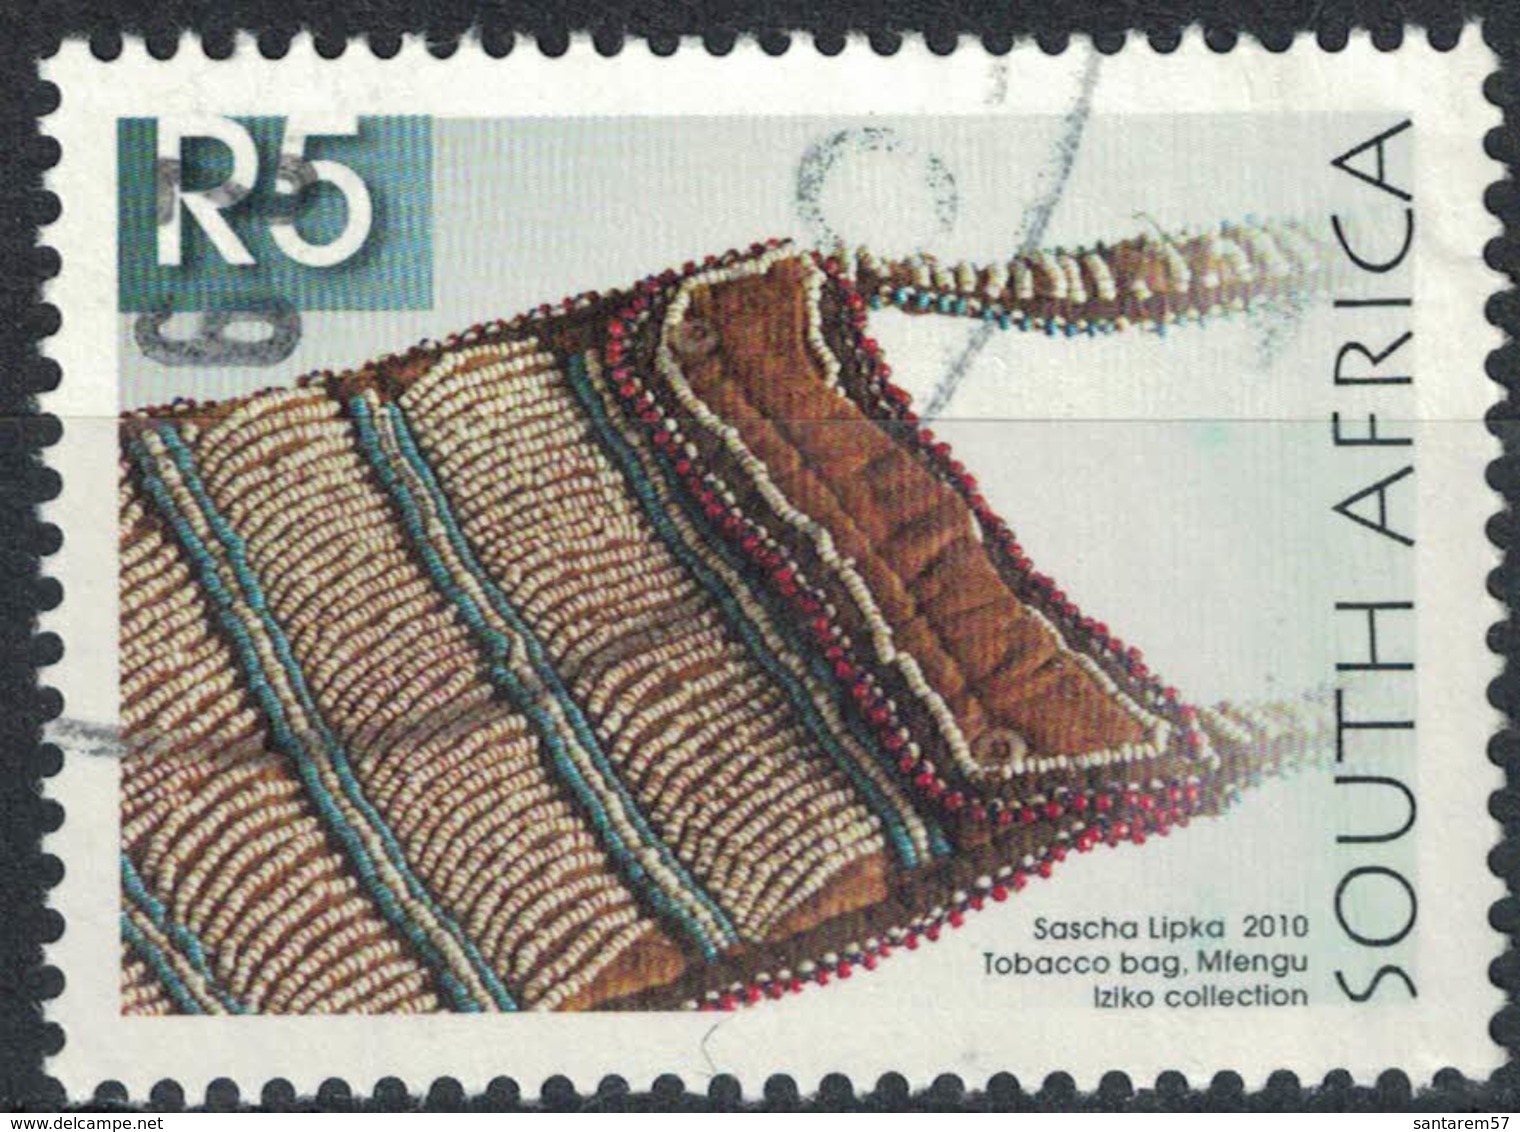 Afrique Du Sud 2010 Oblitération Ronde Used Stamp Sascha Lipka Sac à Tabac Tobacco Bag - Gebruikt